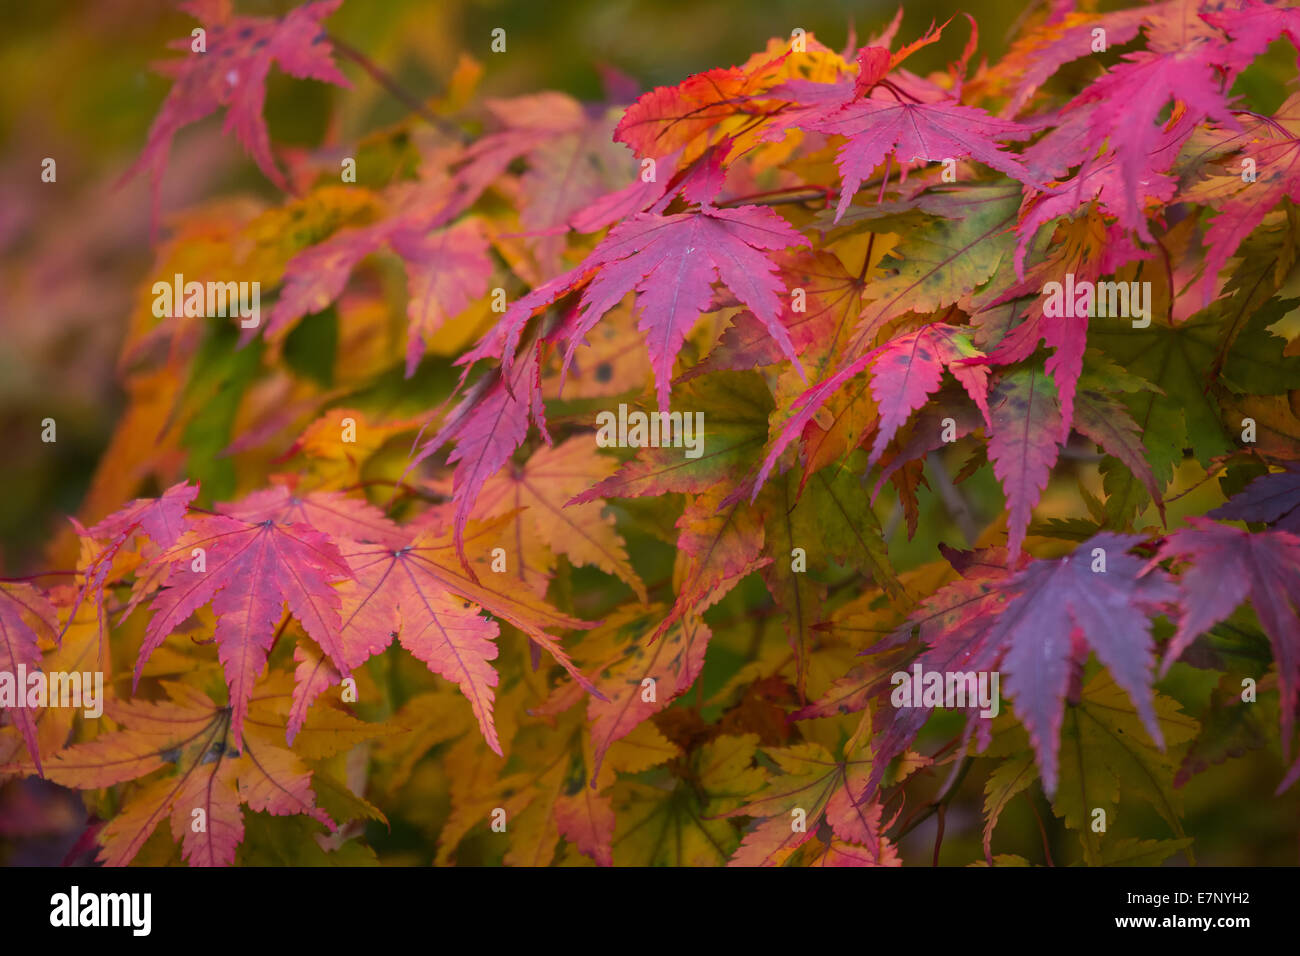 Leaves, colors, autumn, autumn colors, plants, shrubs, bushes, Switzerland, colorful Stock Photo